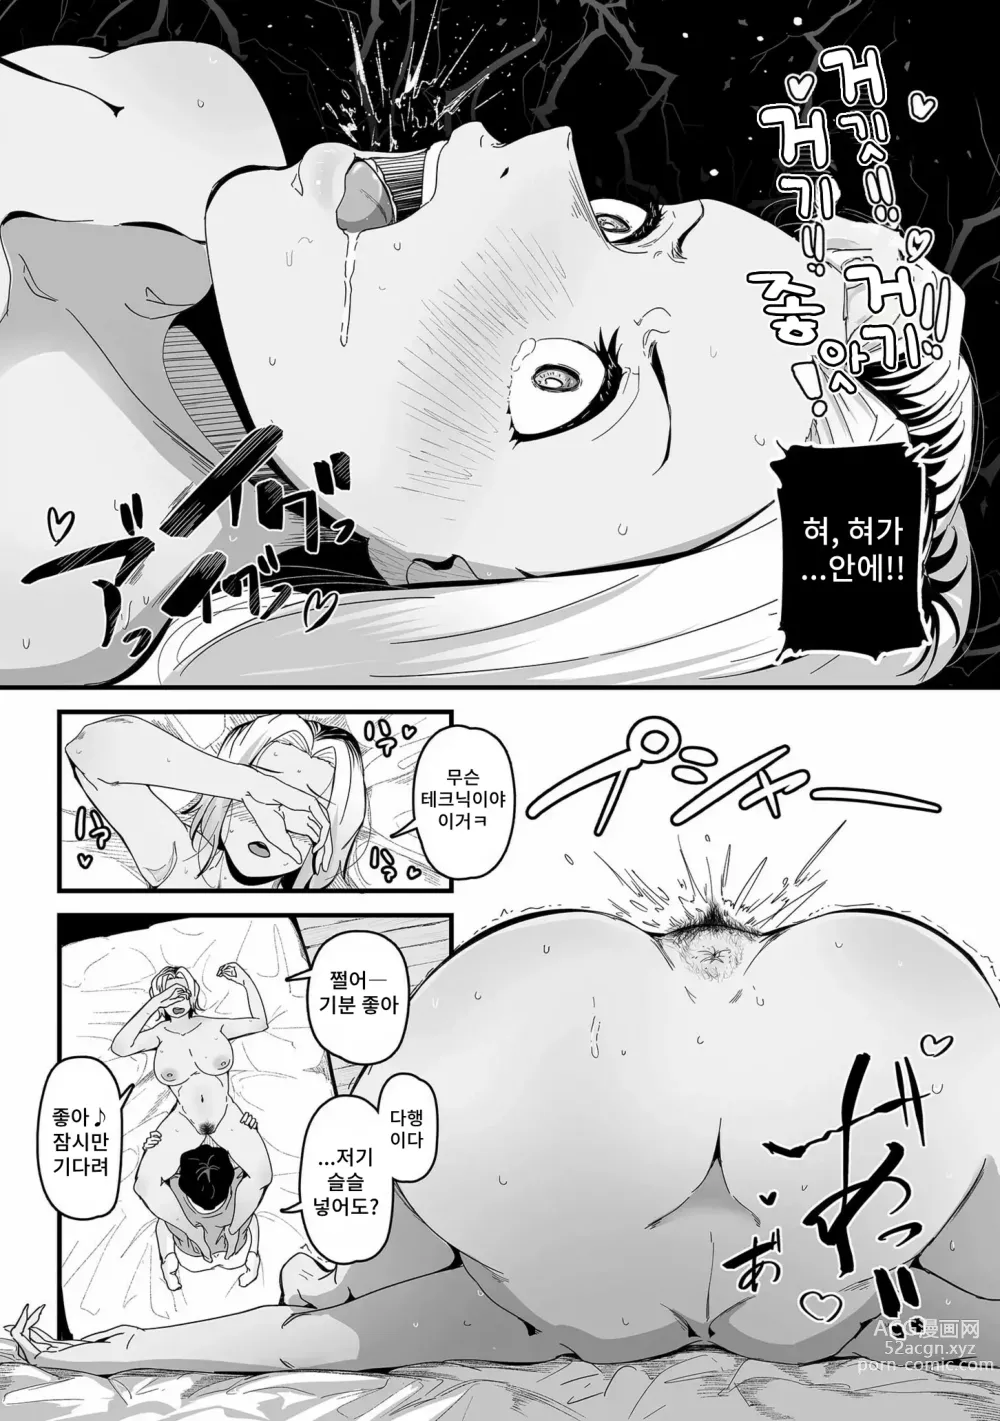 Page 15 of manga 빗치의 첫 애널 잘먹겠습니다!